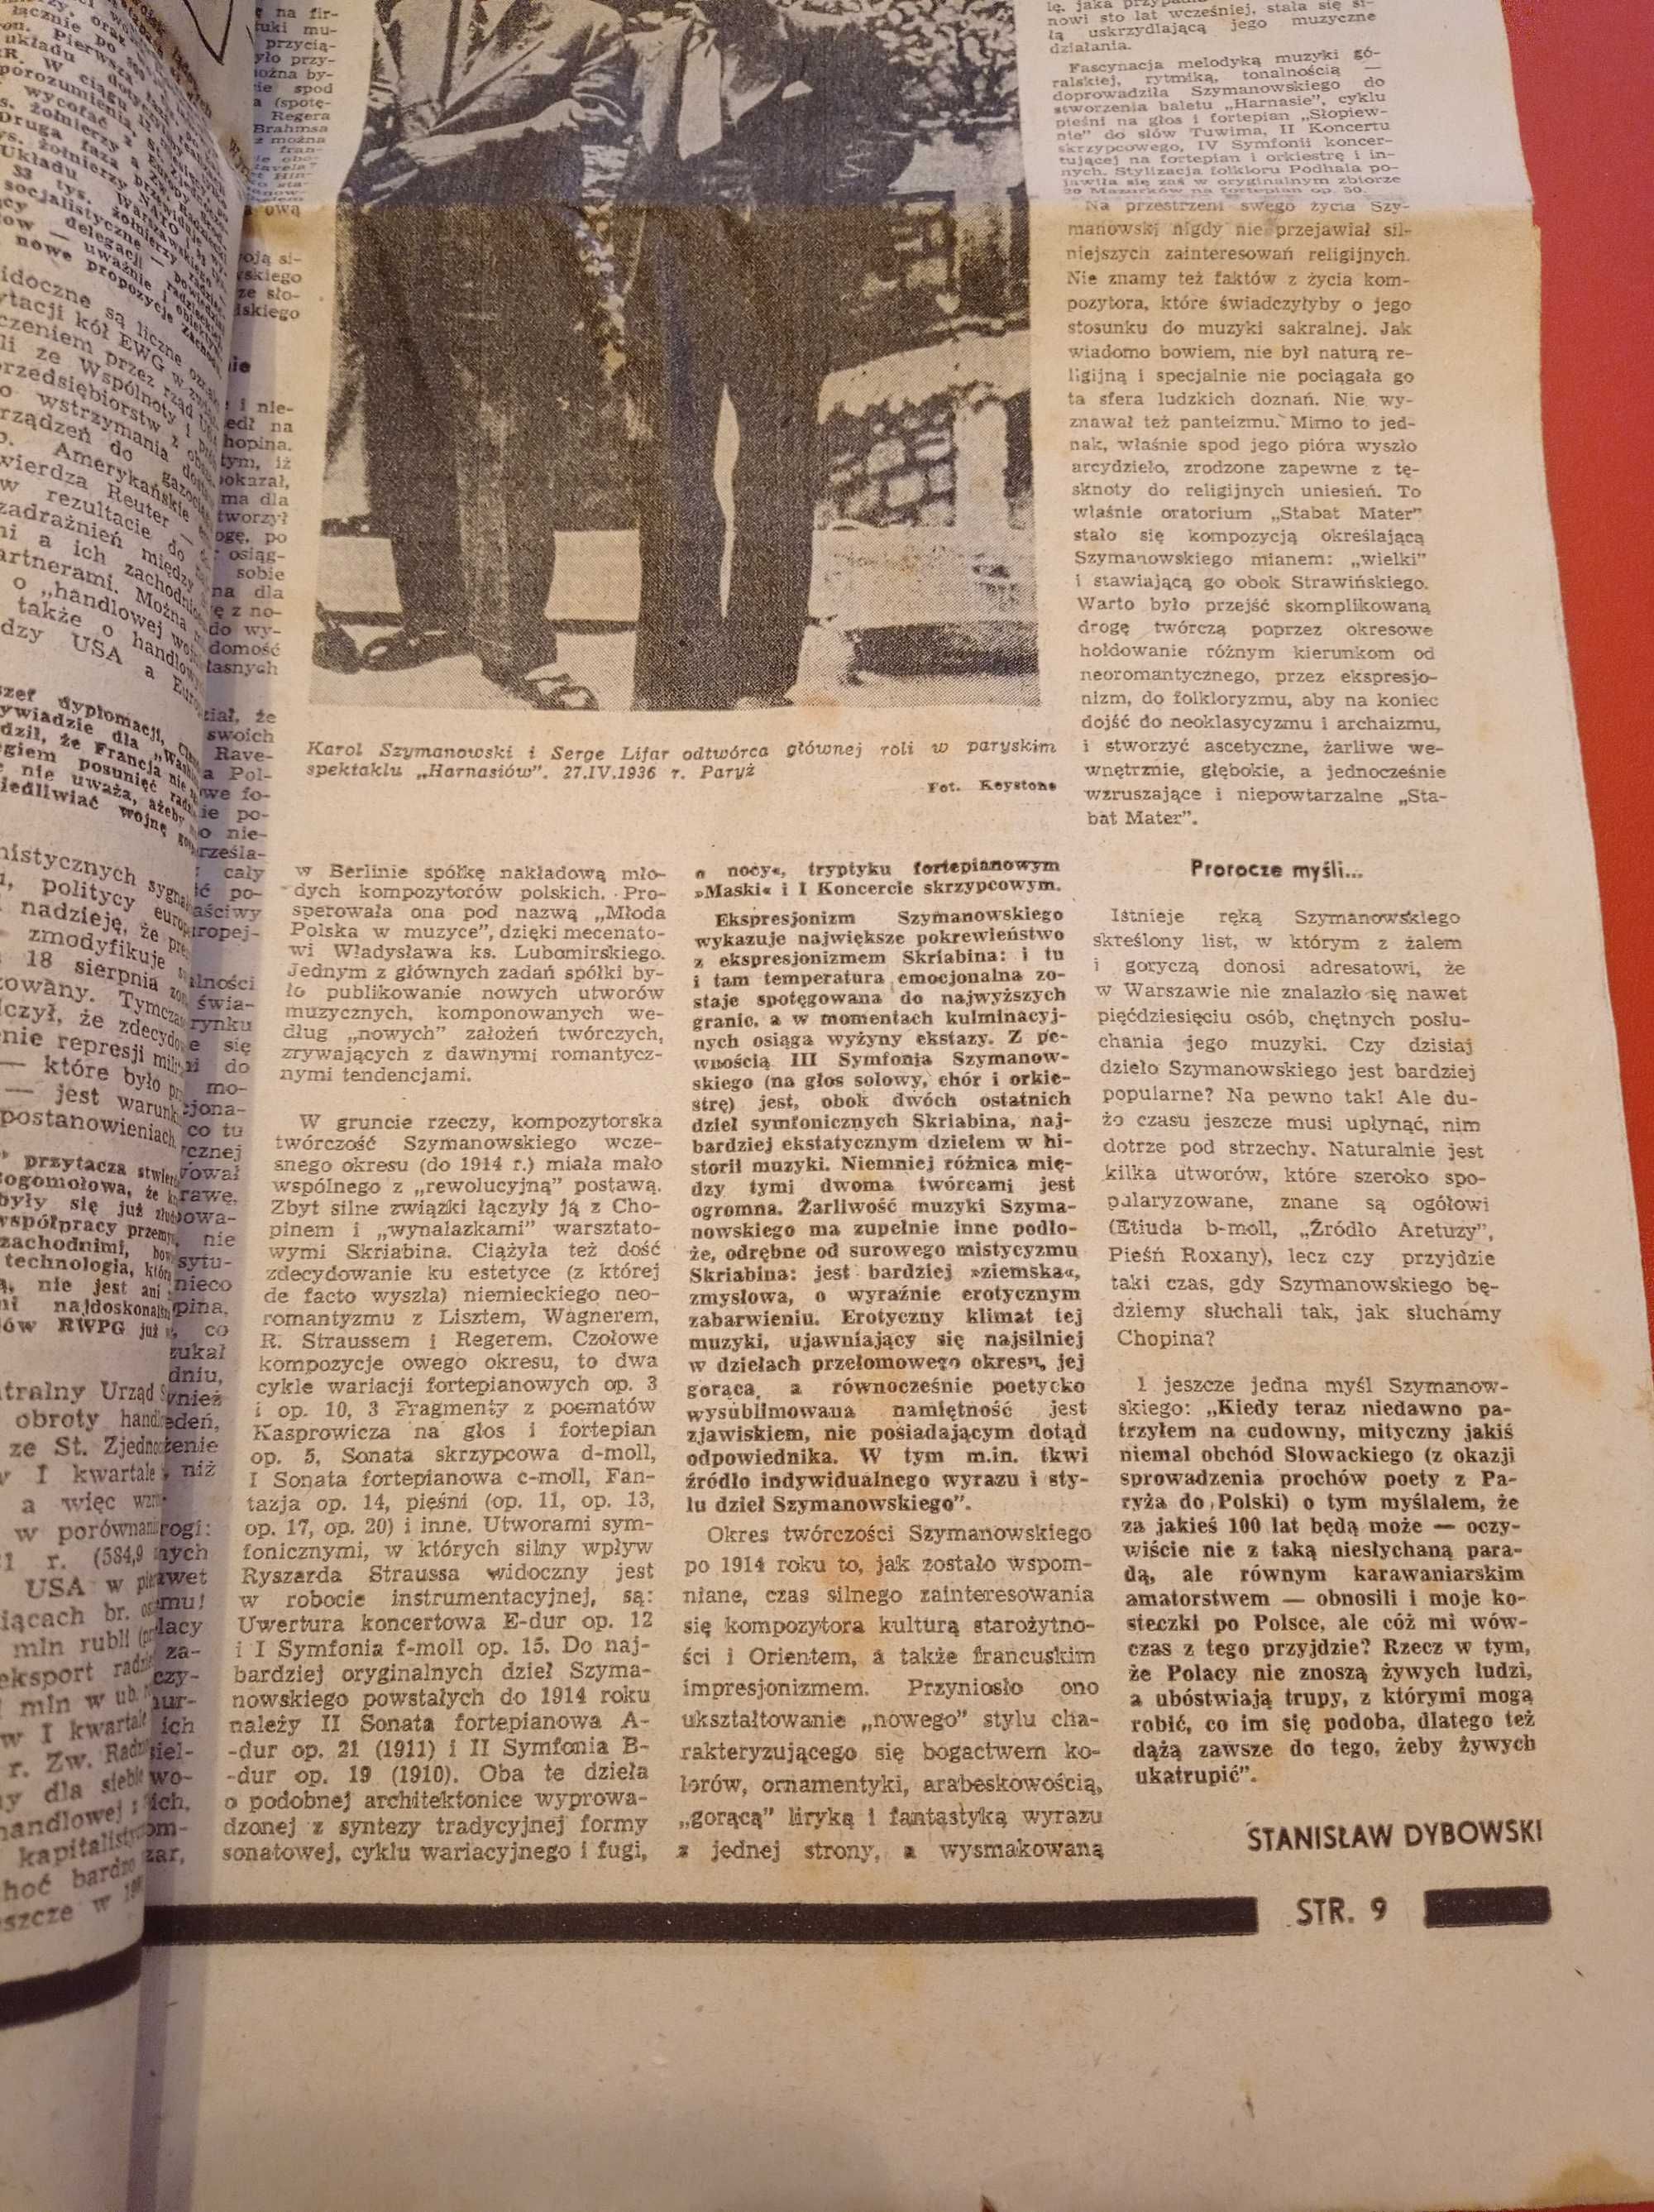 Kierunki tygodnik nr 15 / 1982; 18 lipca 1982